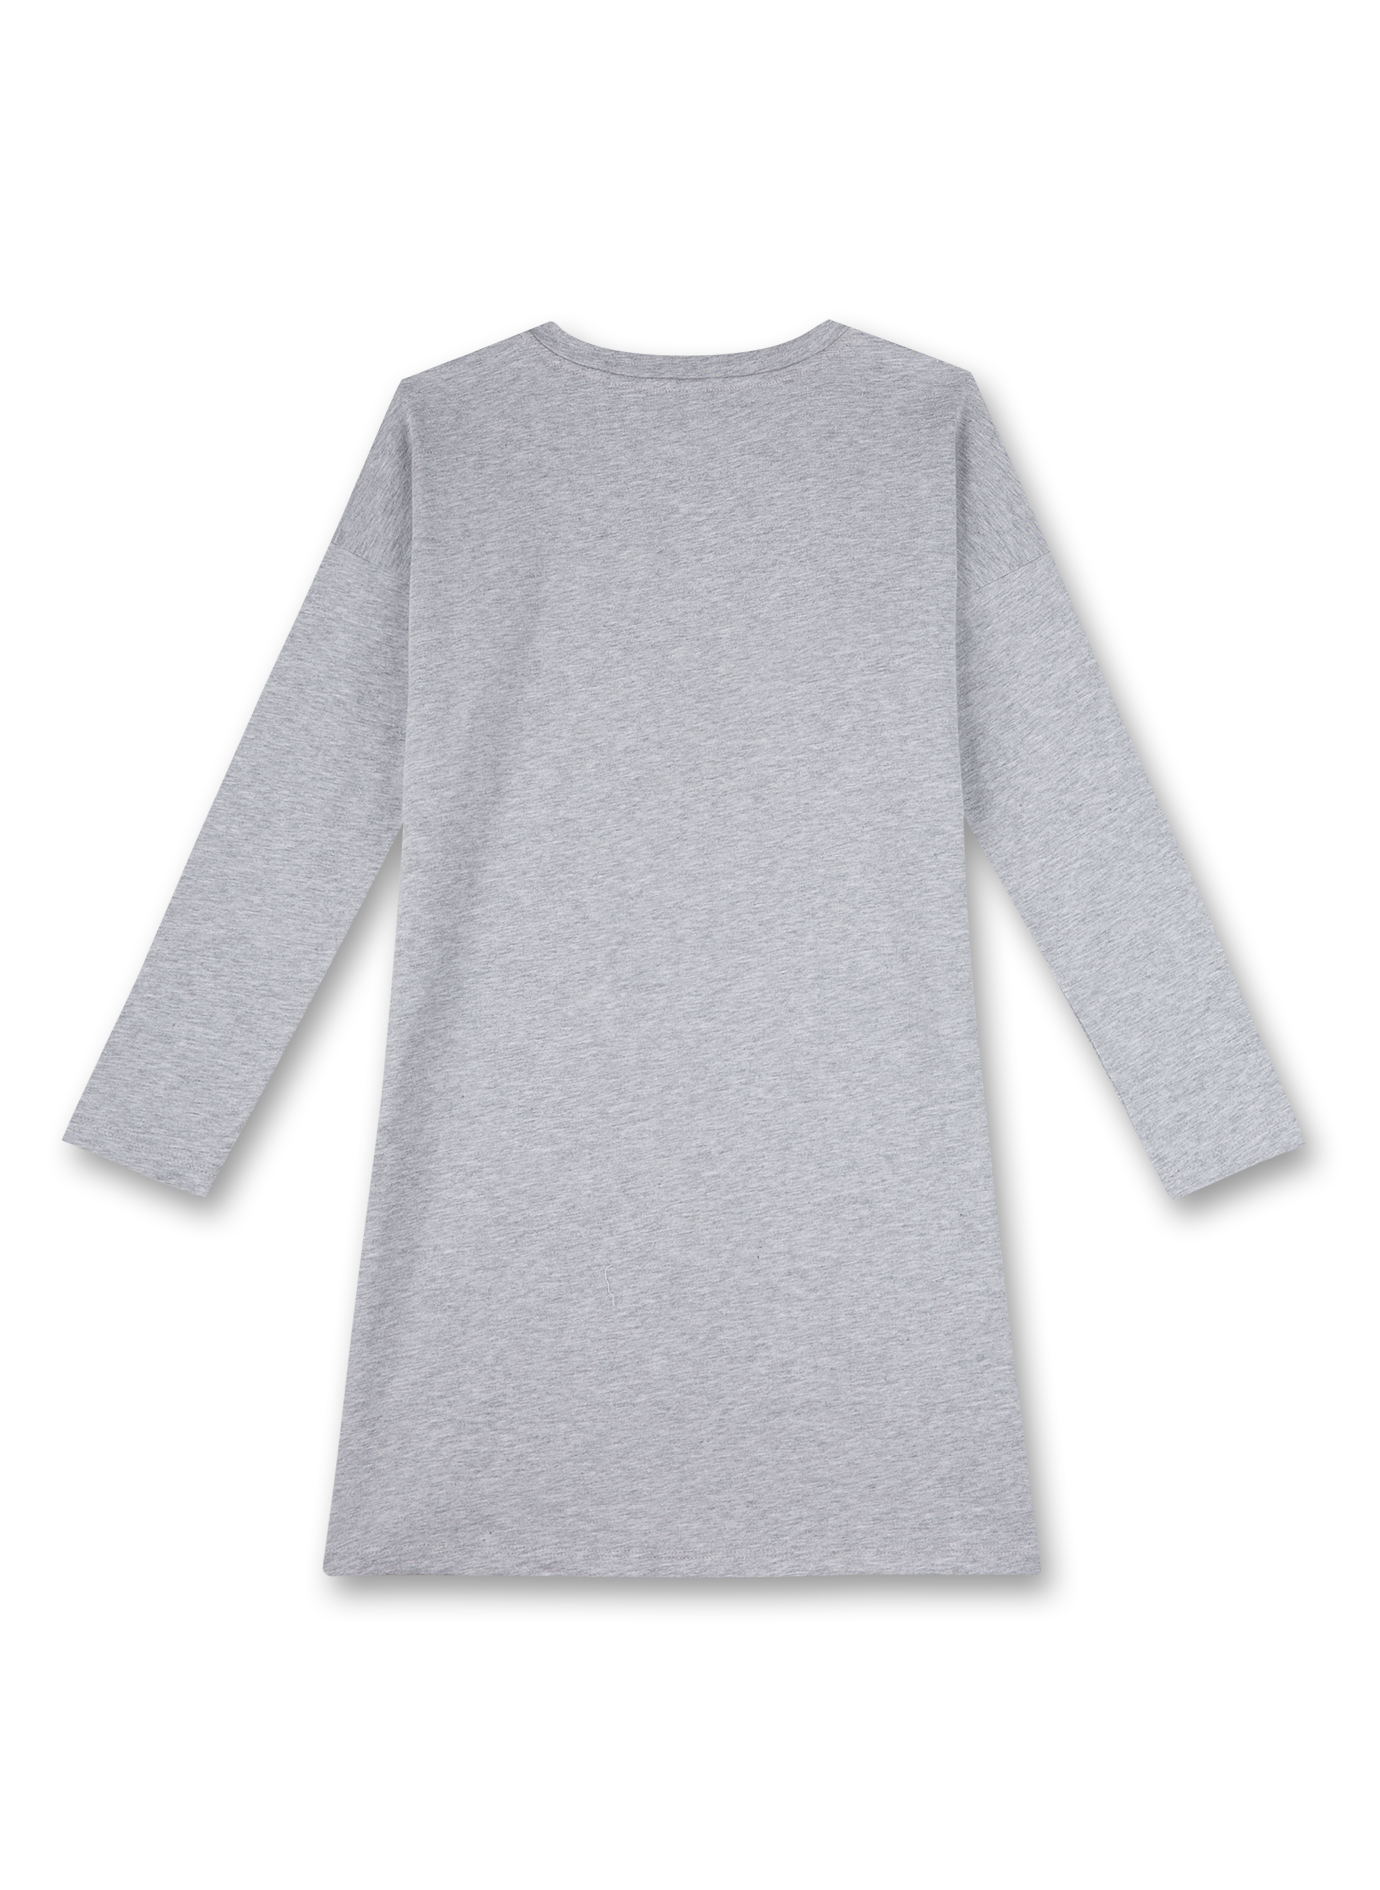 Mädchen-Nachthemd Graumelange